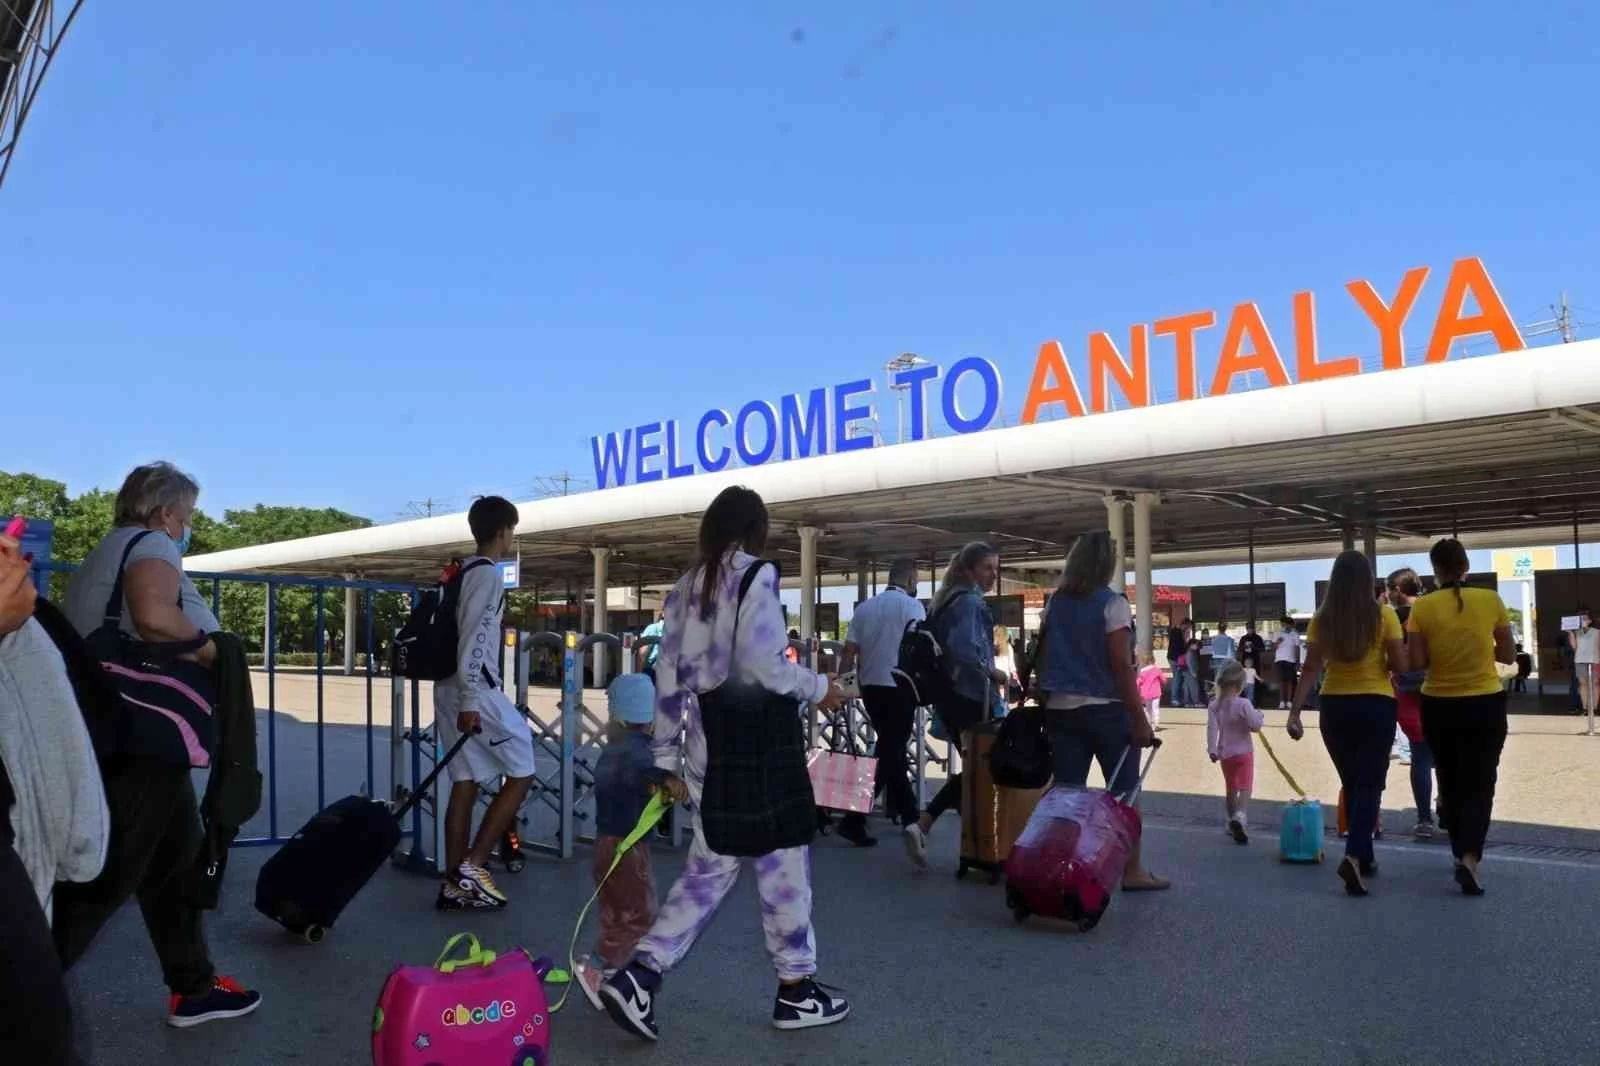 Antalyaya gelen turist sayısı 13 milyonu geçti